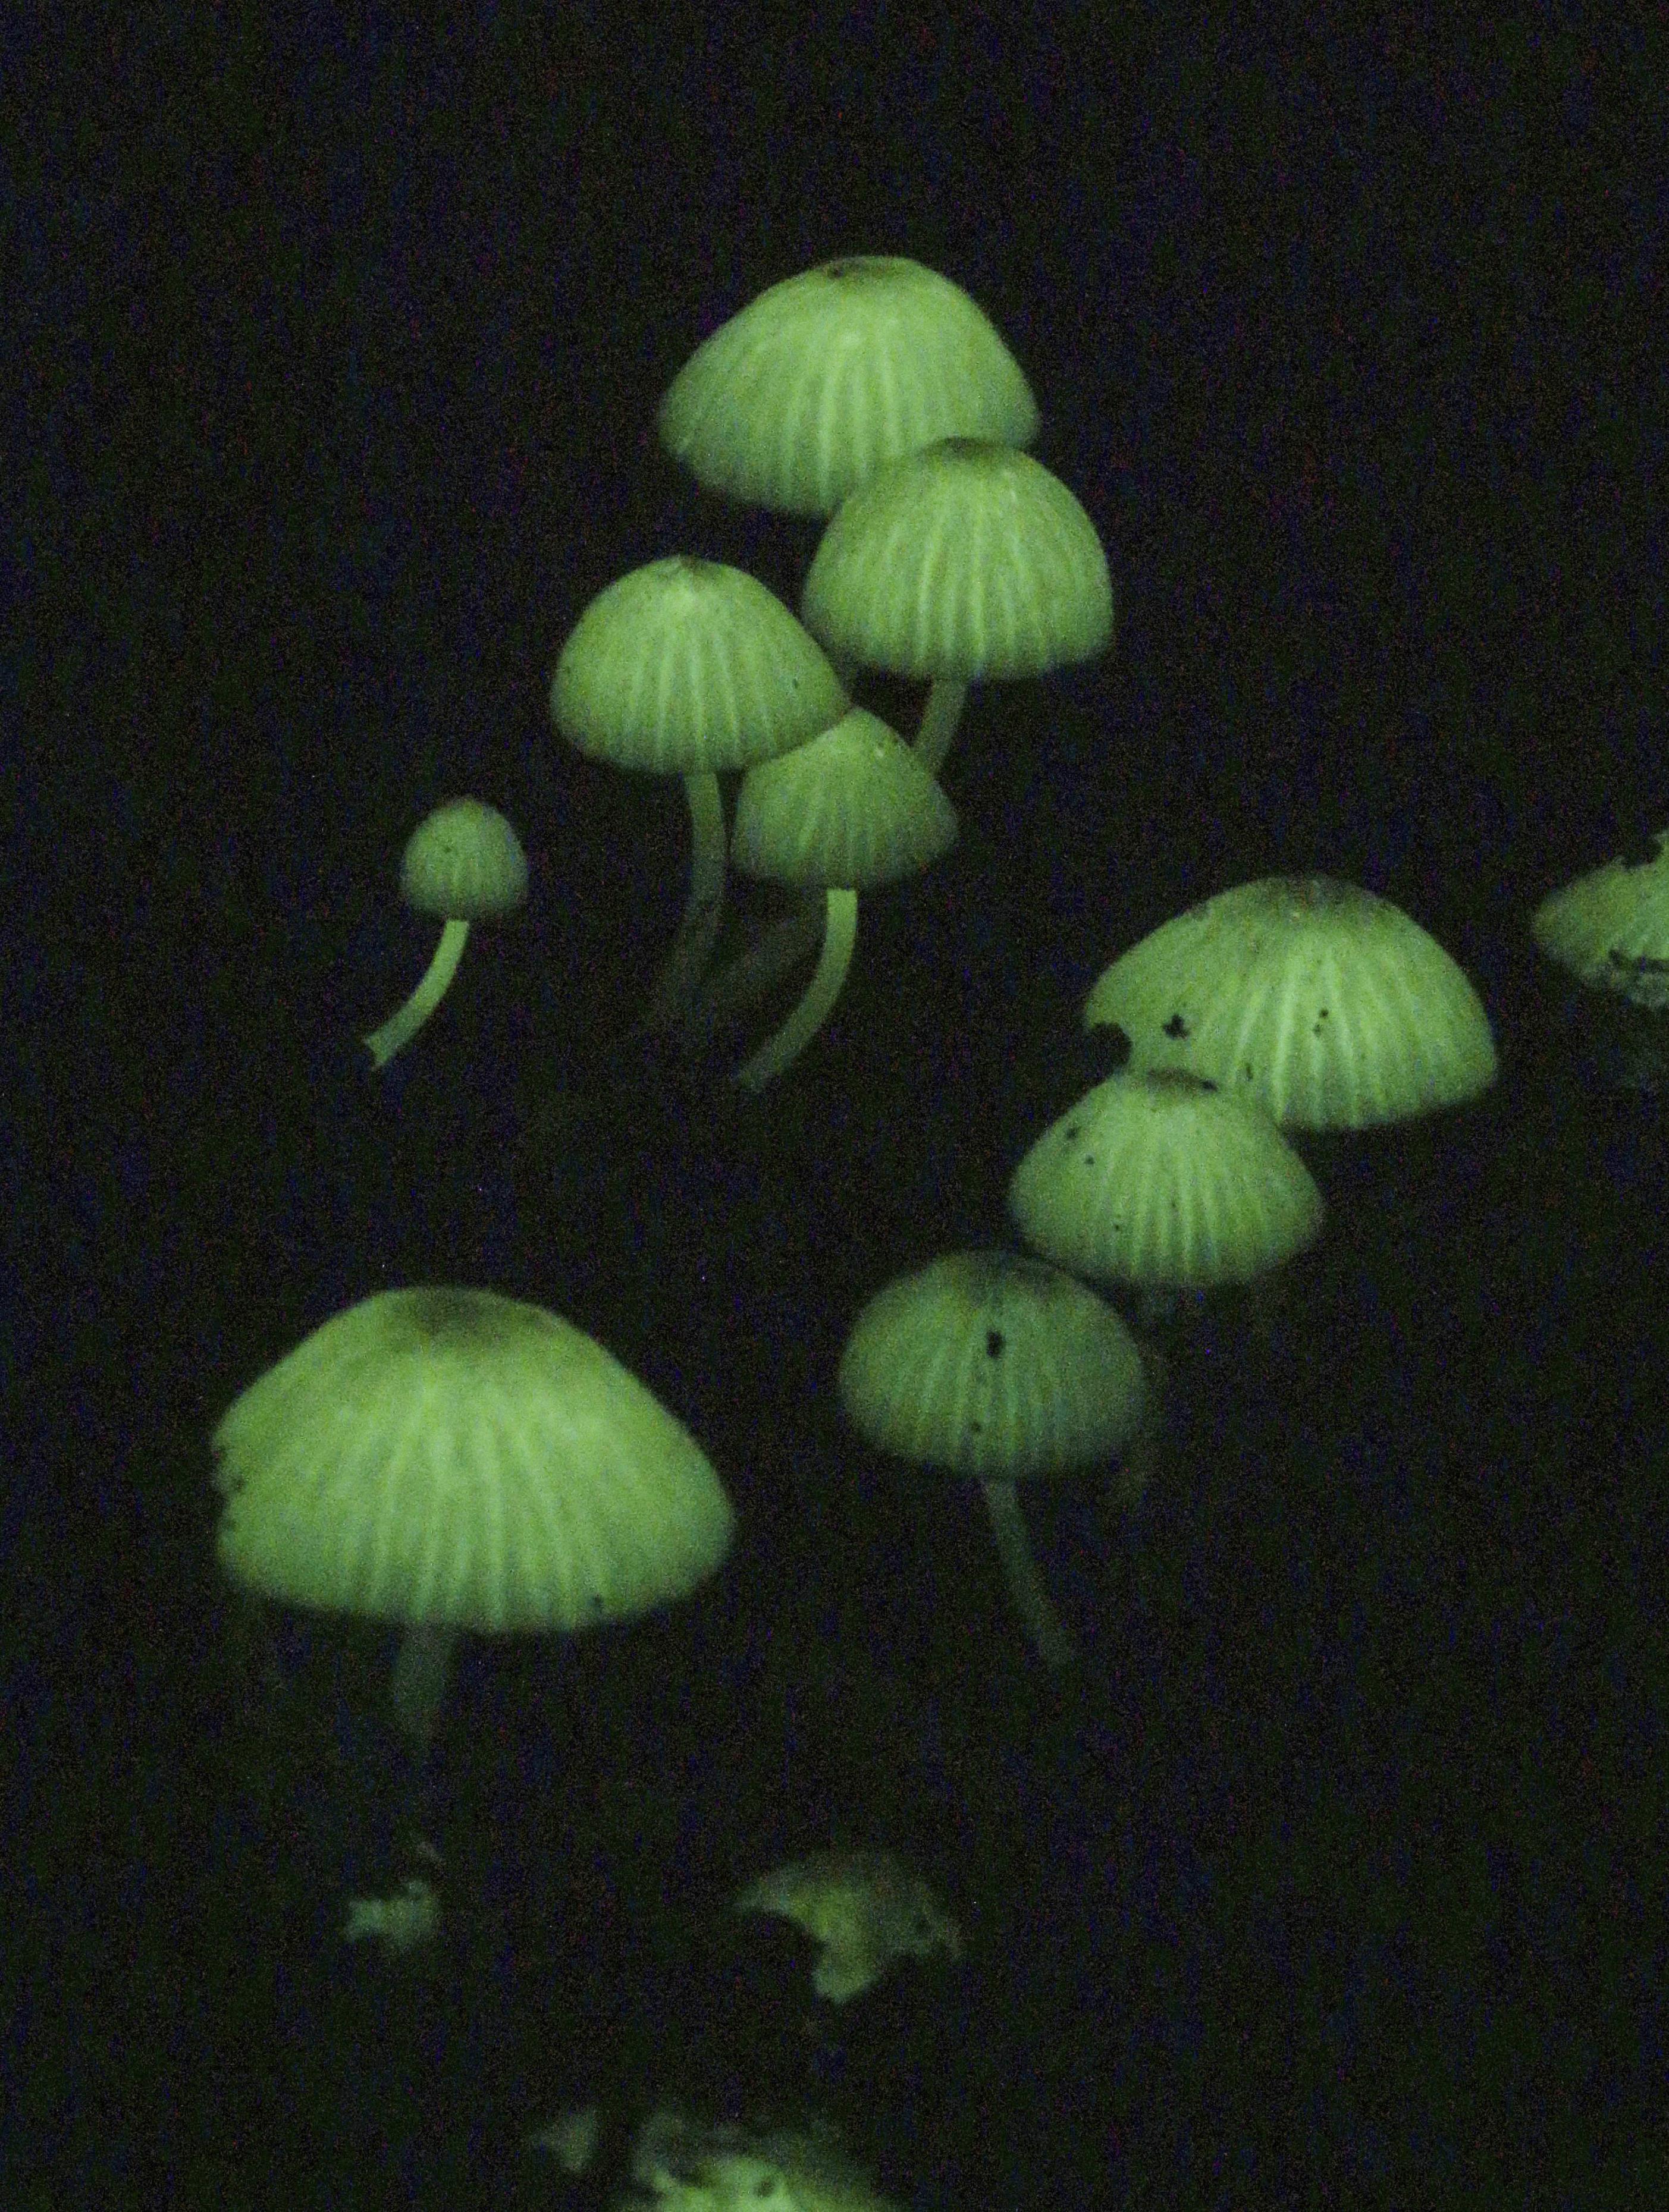 夜の森に光るキノコ 奄美、幻想的な緑色に - 産経ニュース